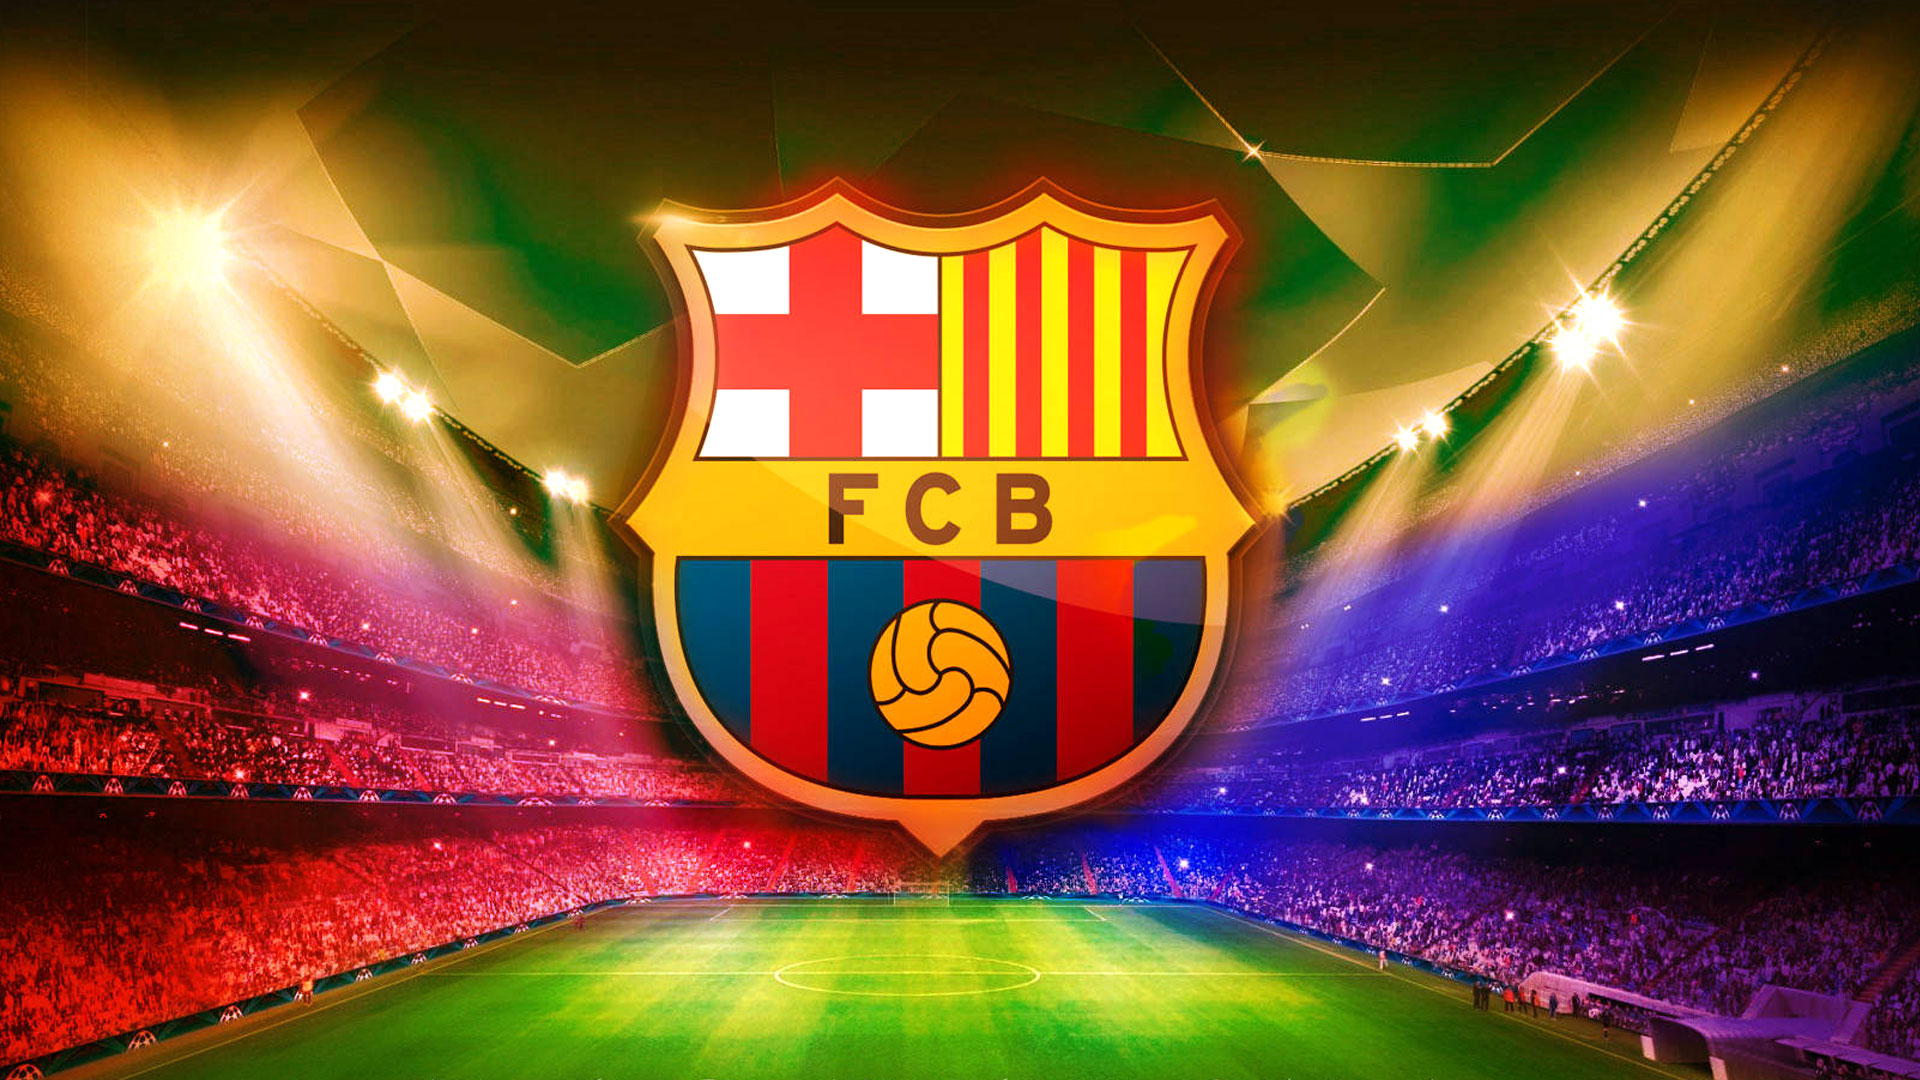 바르셀로나 벽지 3d,축구,경기장,제도법,그래픽 디자인,상징